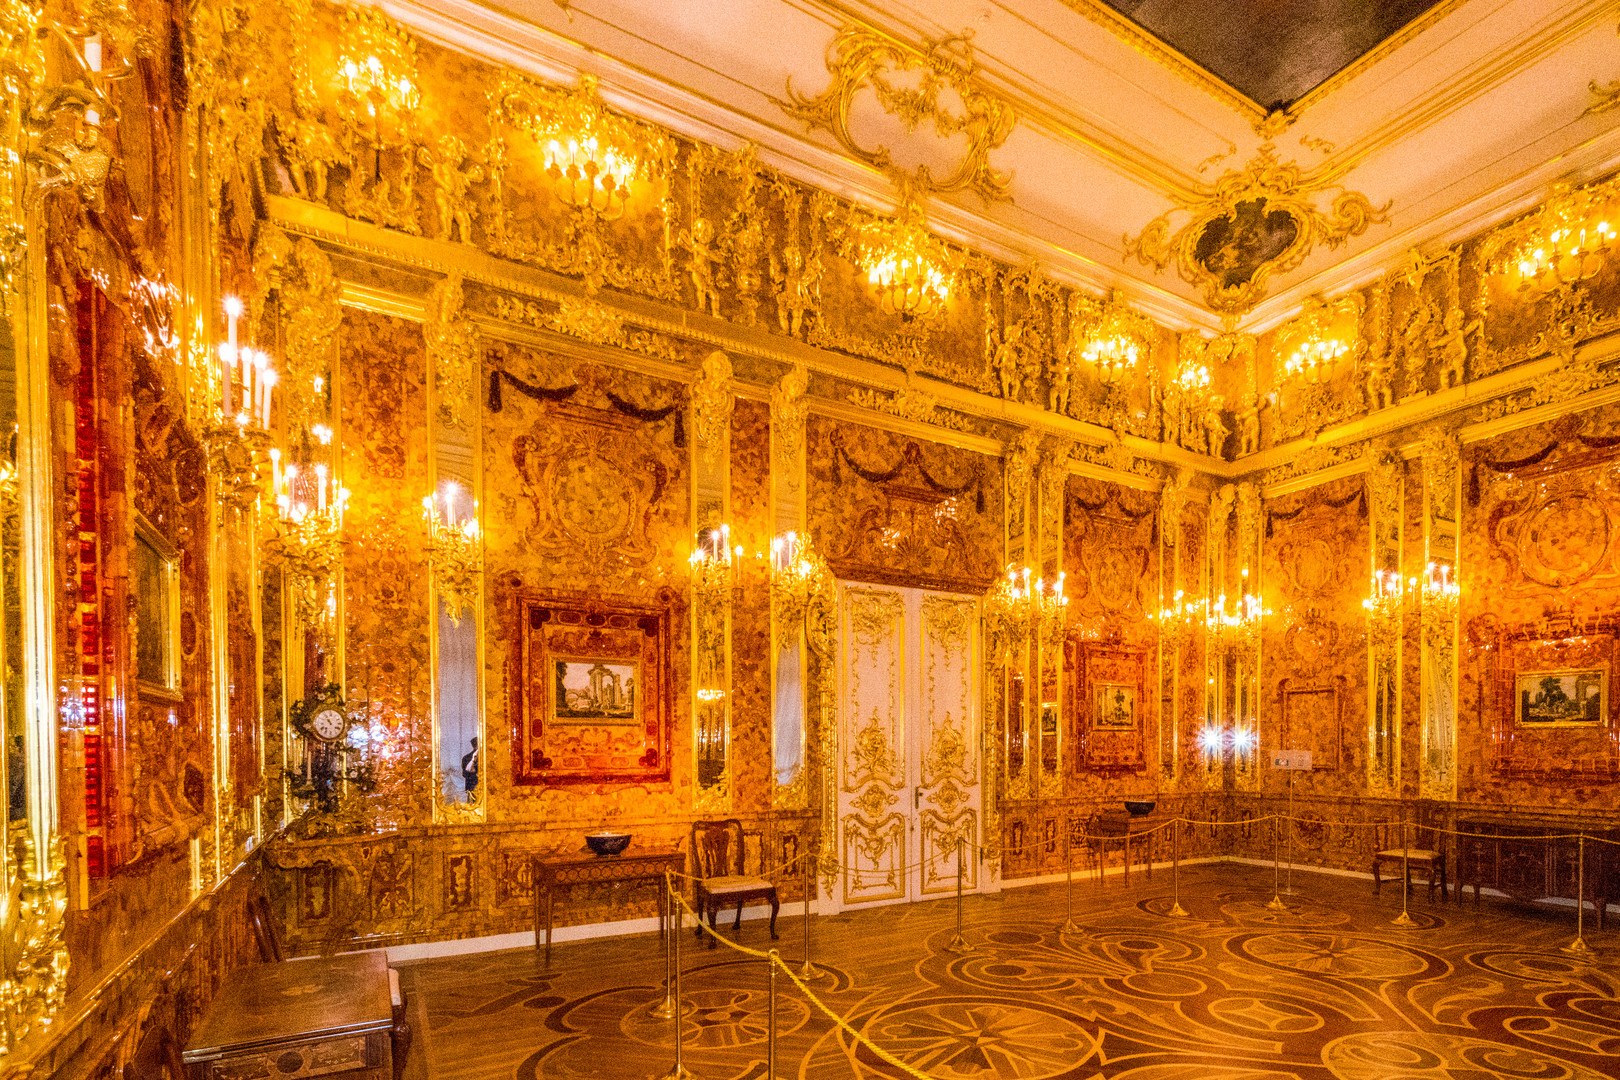 Bernsteinzimmer im Katharinenpalast (St. Petersburg)